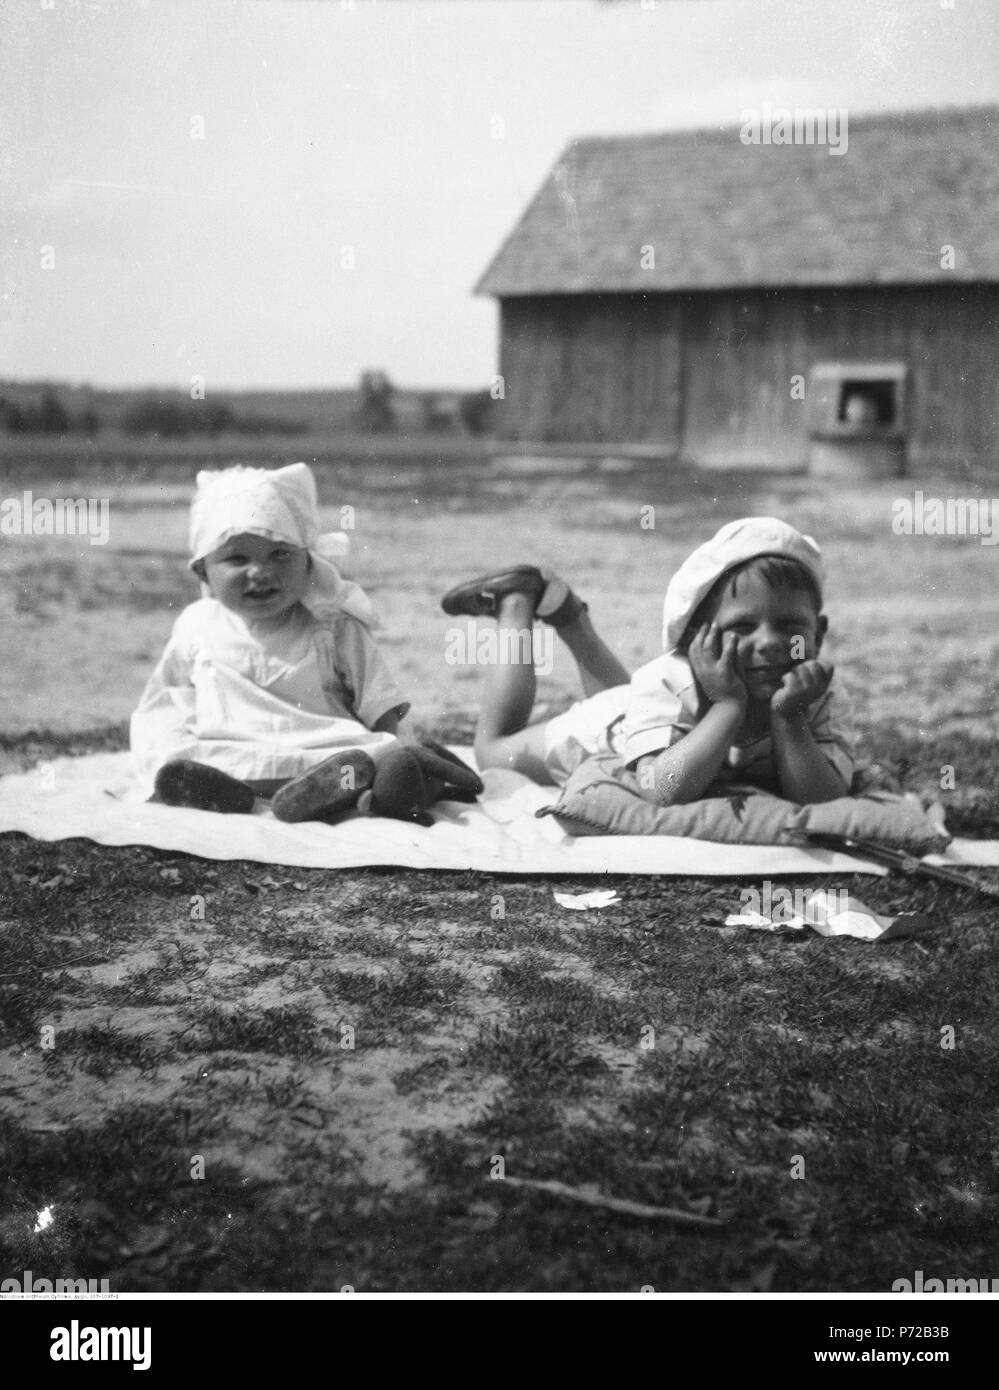 59 Narcyz Witczak-Witaczyński - Dzieci (107-1037-1) Stock Photo